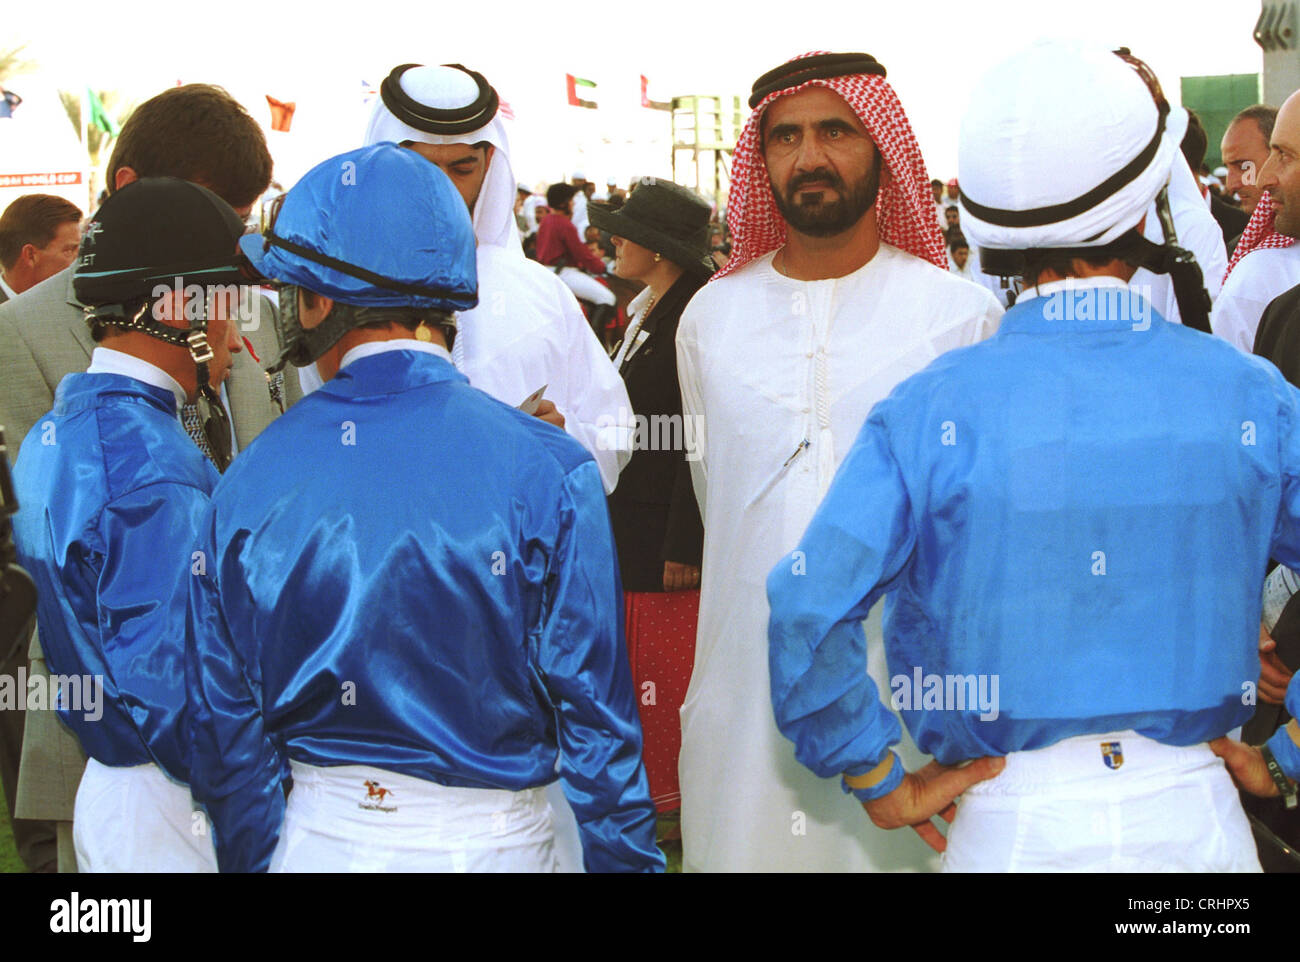 Dubaï, Émirats arabes unis, Sheikh Mohammed Al Maktoum avec jockey Banque D'Images